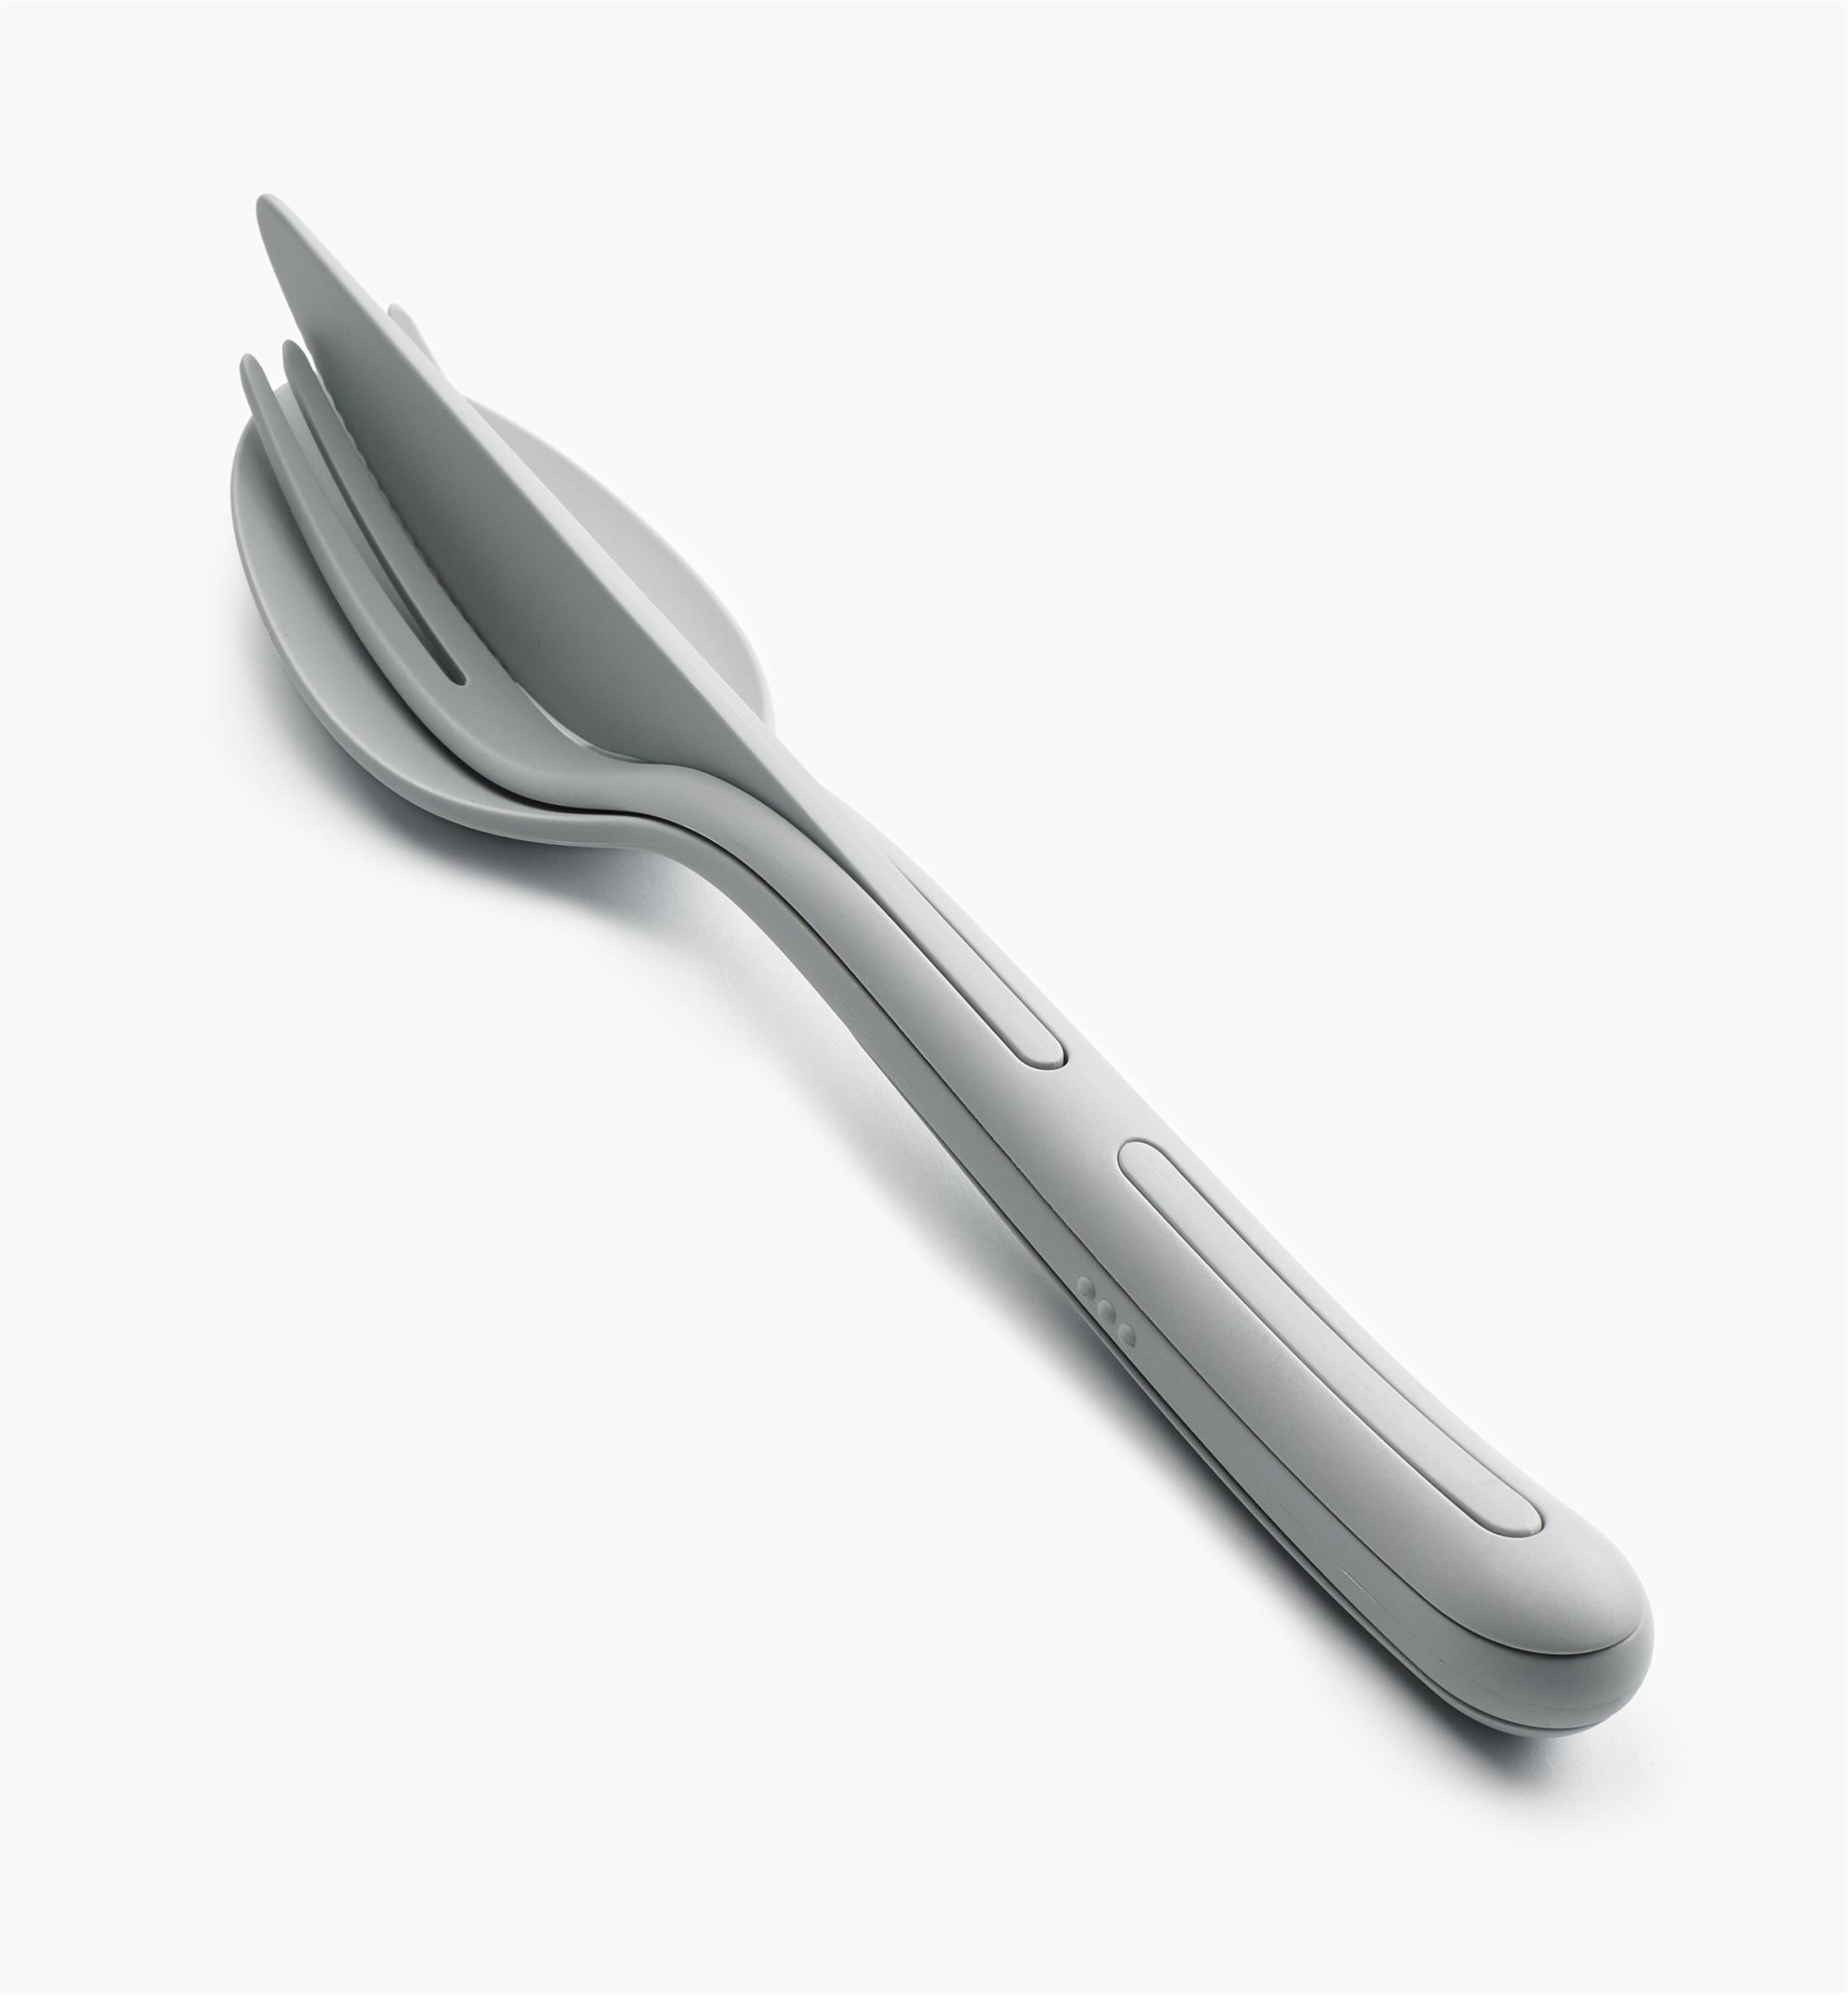 https://assets.leevalley.com/Size5/10104/EV279-klikk-cutlery-set-gray-f-0020.jpg